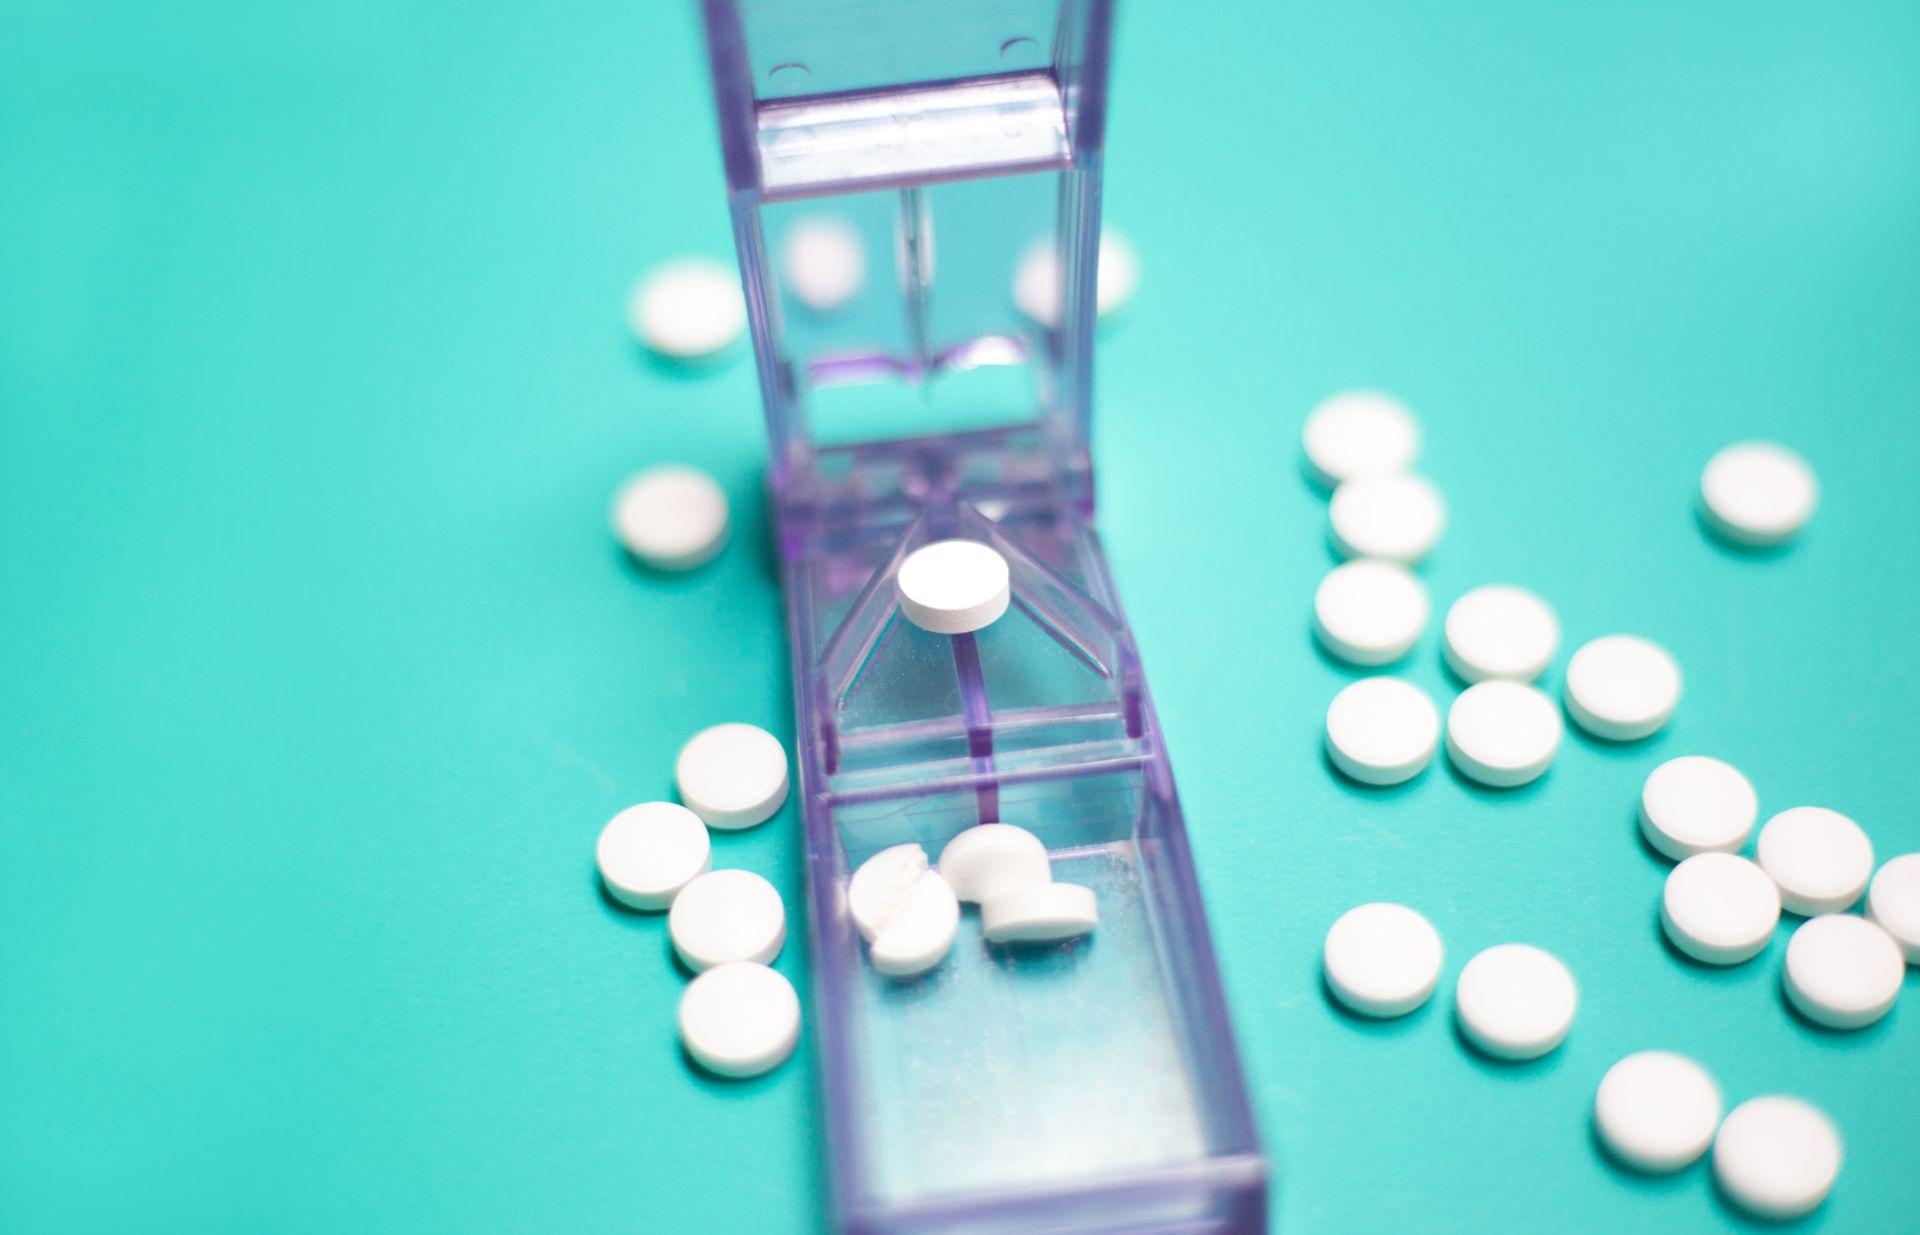 Niedrige Kortisondosen haben bei Rheumatikern eindeutig mehr Nutzen als Schaden